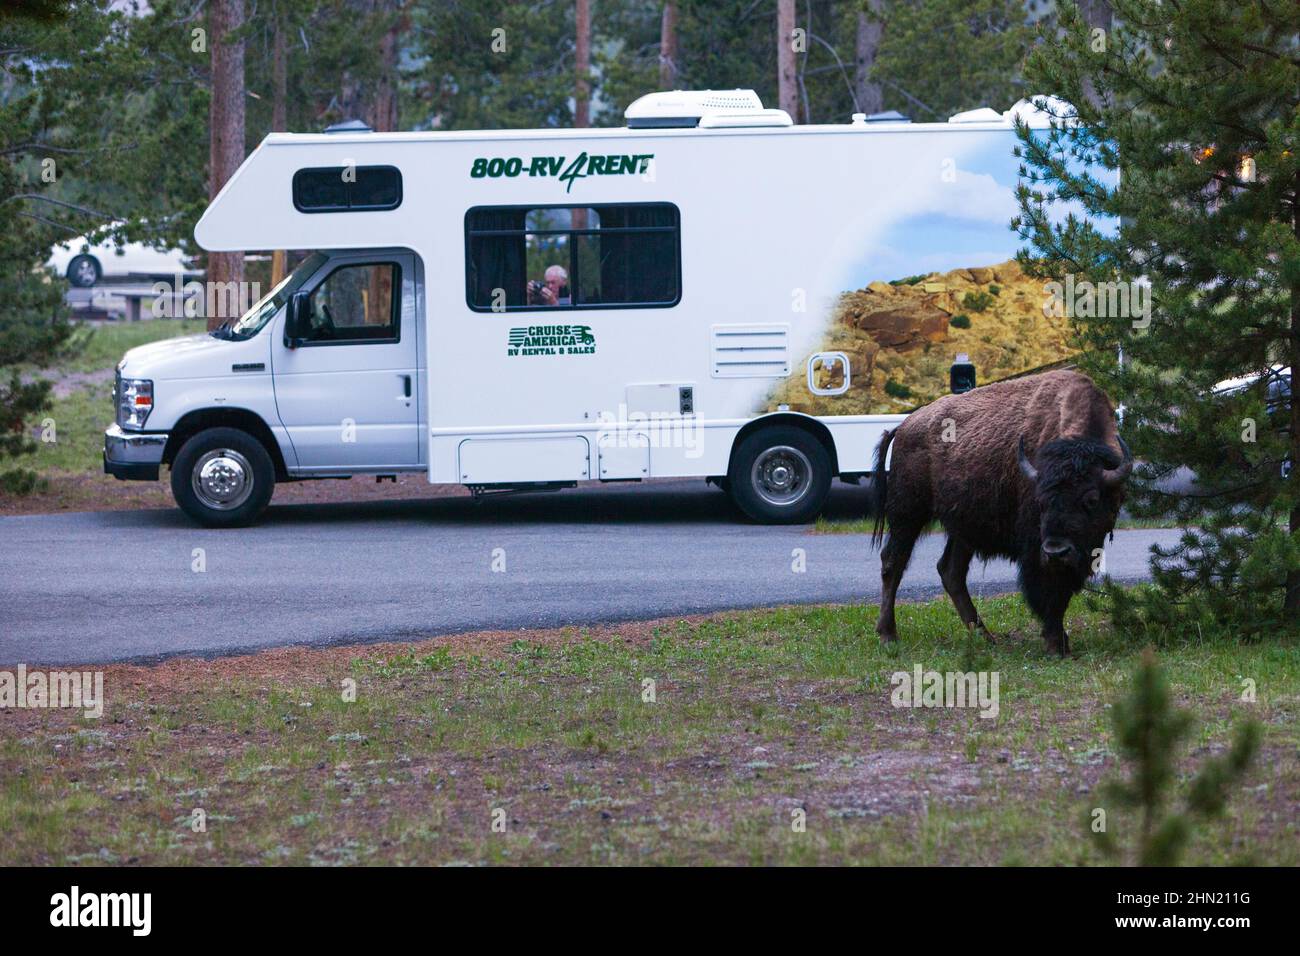 American Bison (Bison bison) dans le terrain de camping de Madison, parc national de Yellowstone, Wyoming, États-Unis Banque D'Images